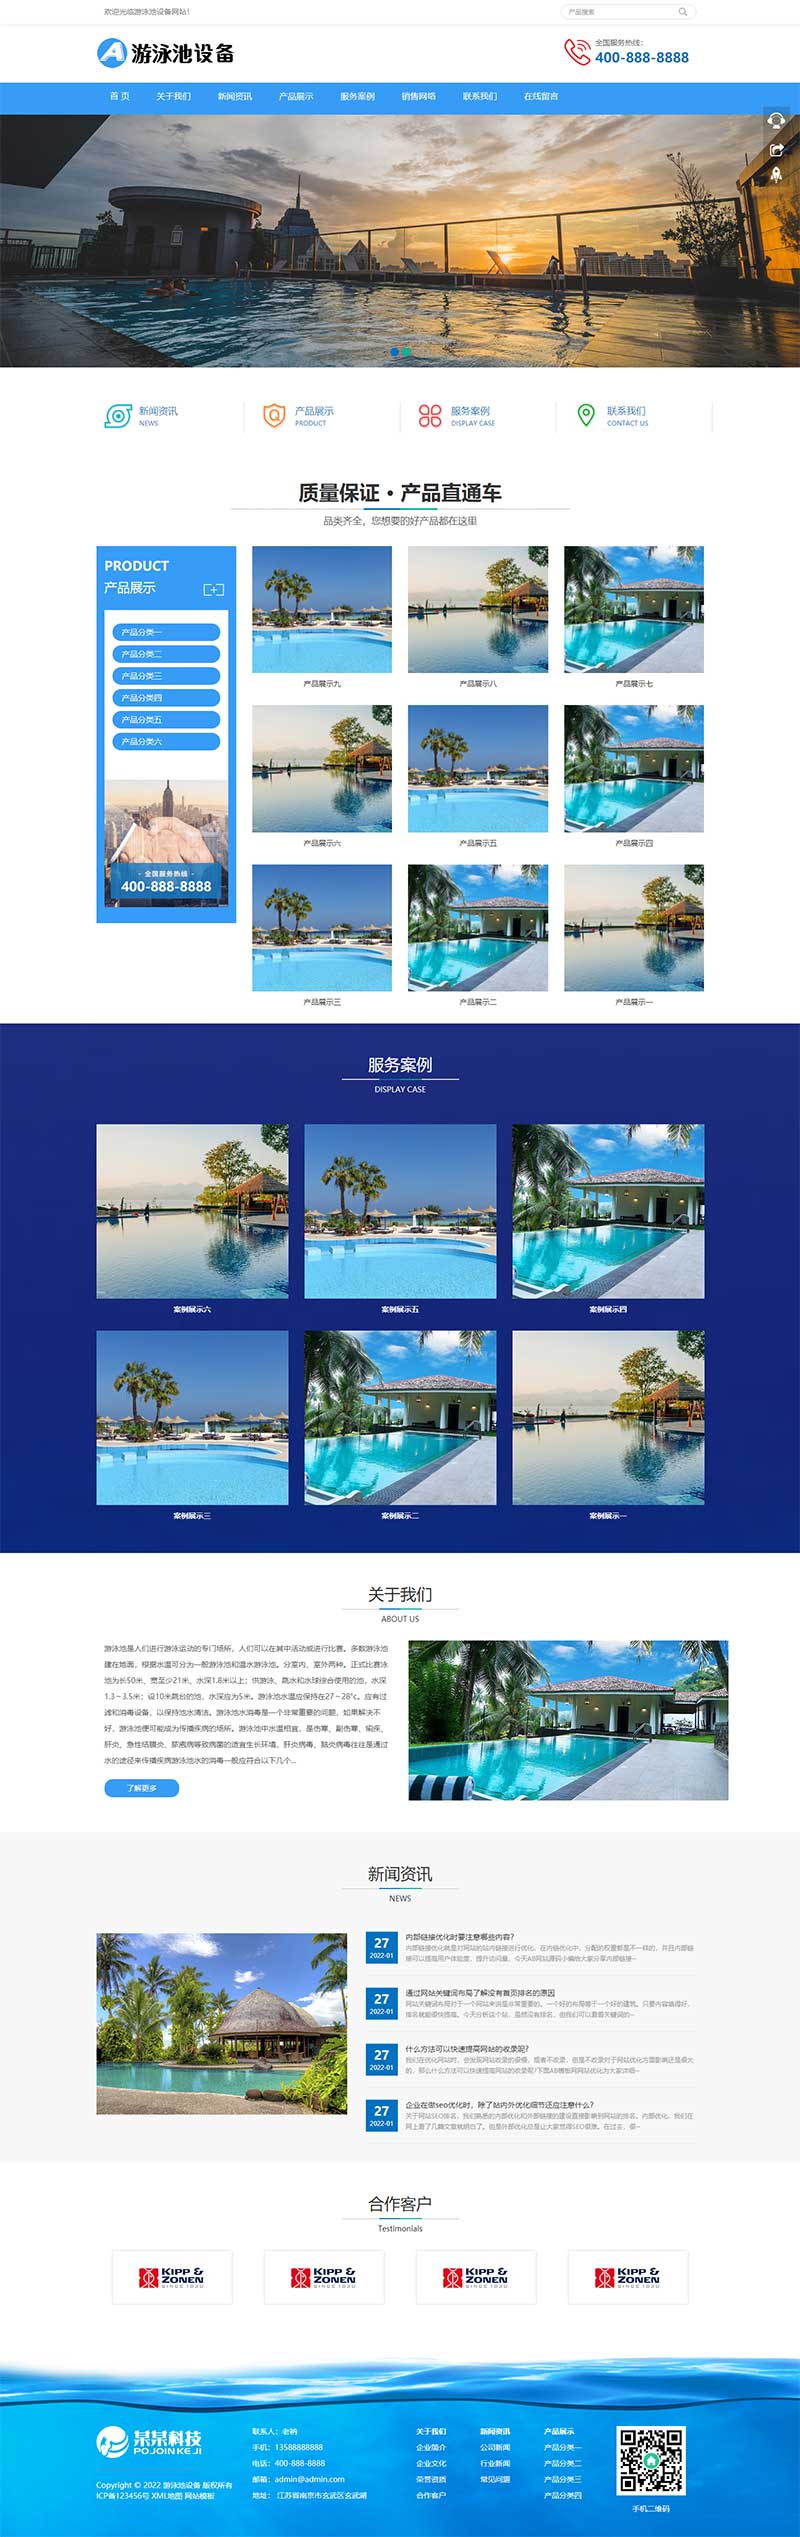 游泳馆泳池设备水处理器Wordpress网站模板效果图